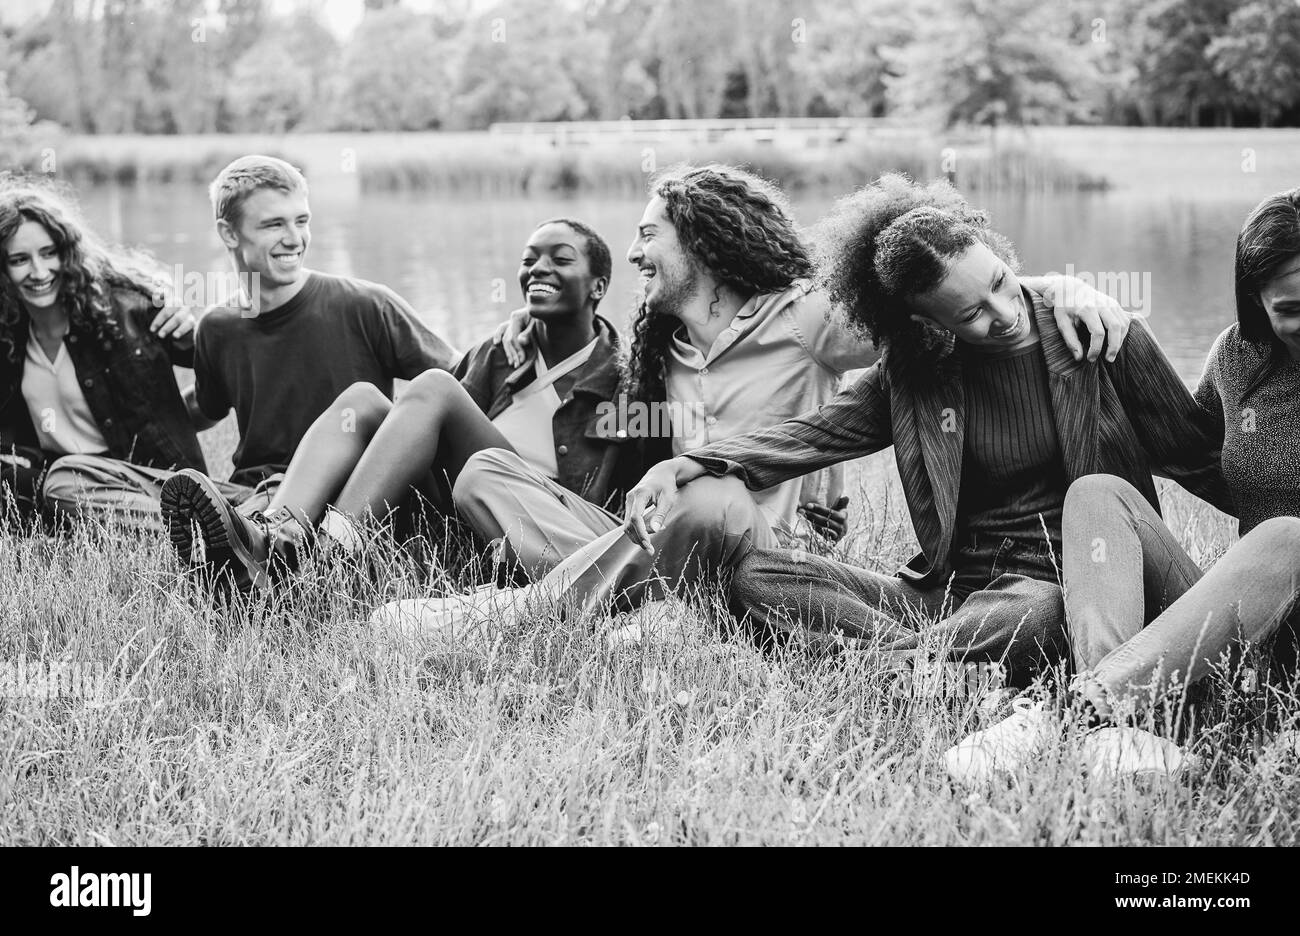 Amici multietnici che si divertono seduti sull'erba all'aperto - Focus sulla faccia destra della ragazza africana - montaggio in bianco e nero Foto Stock